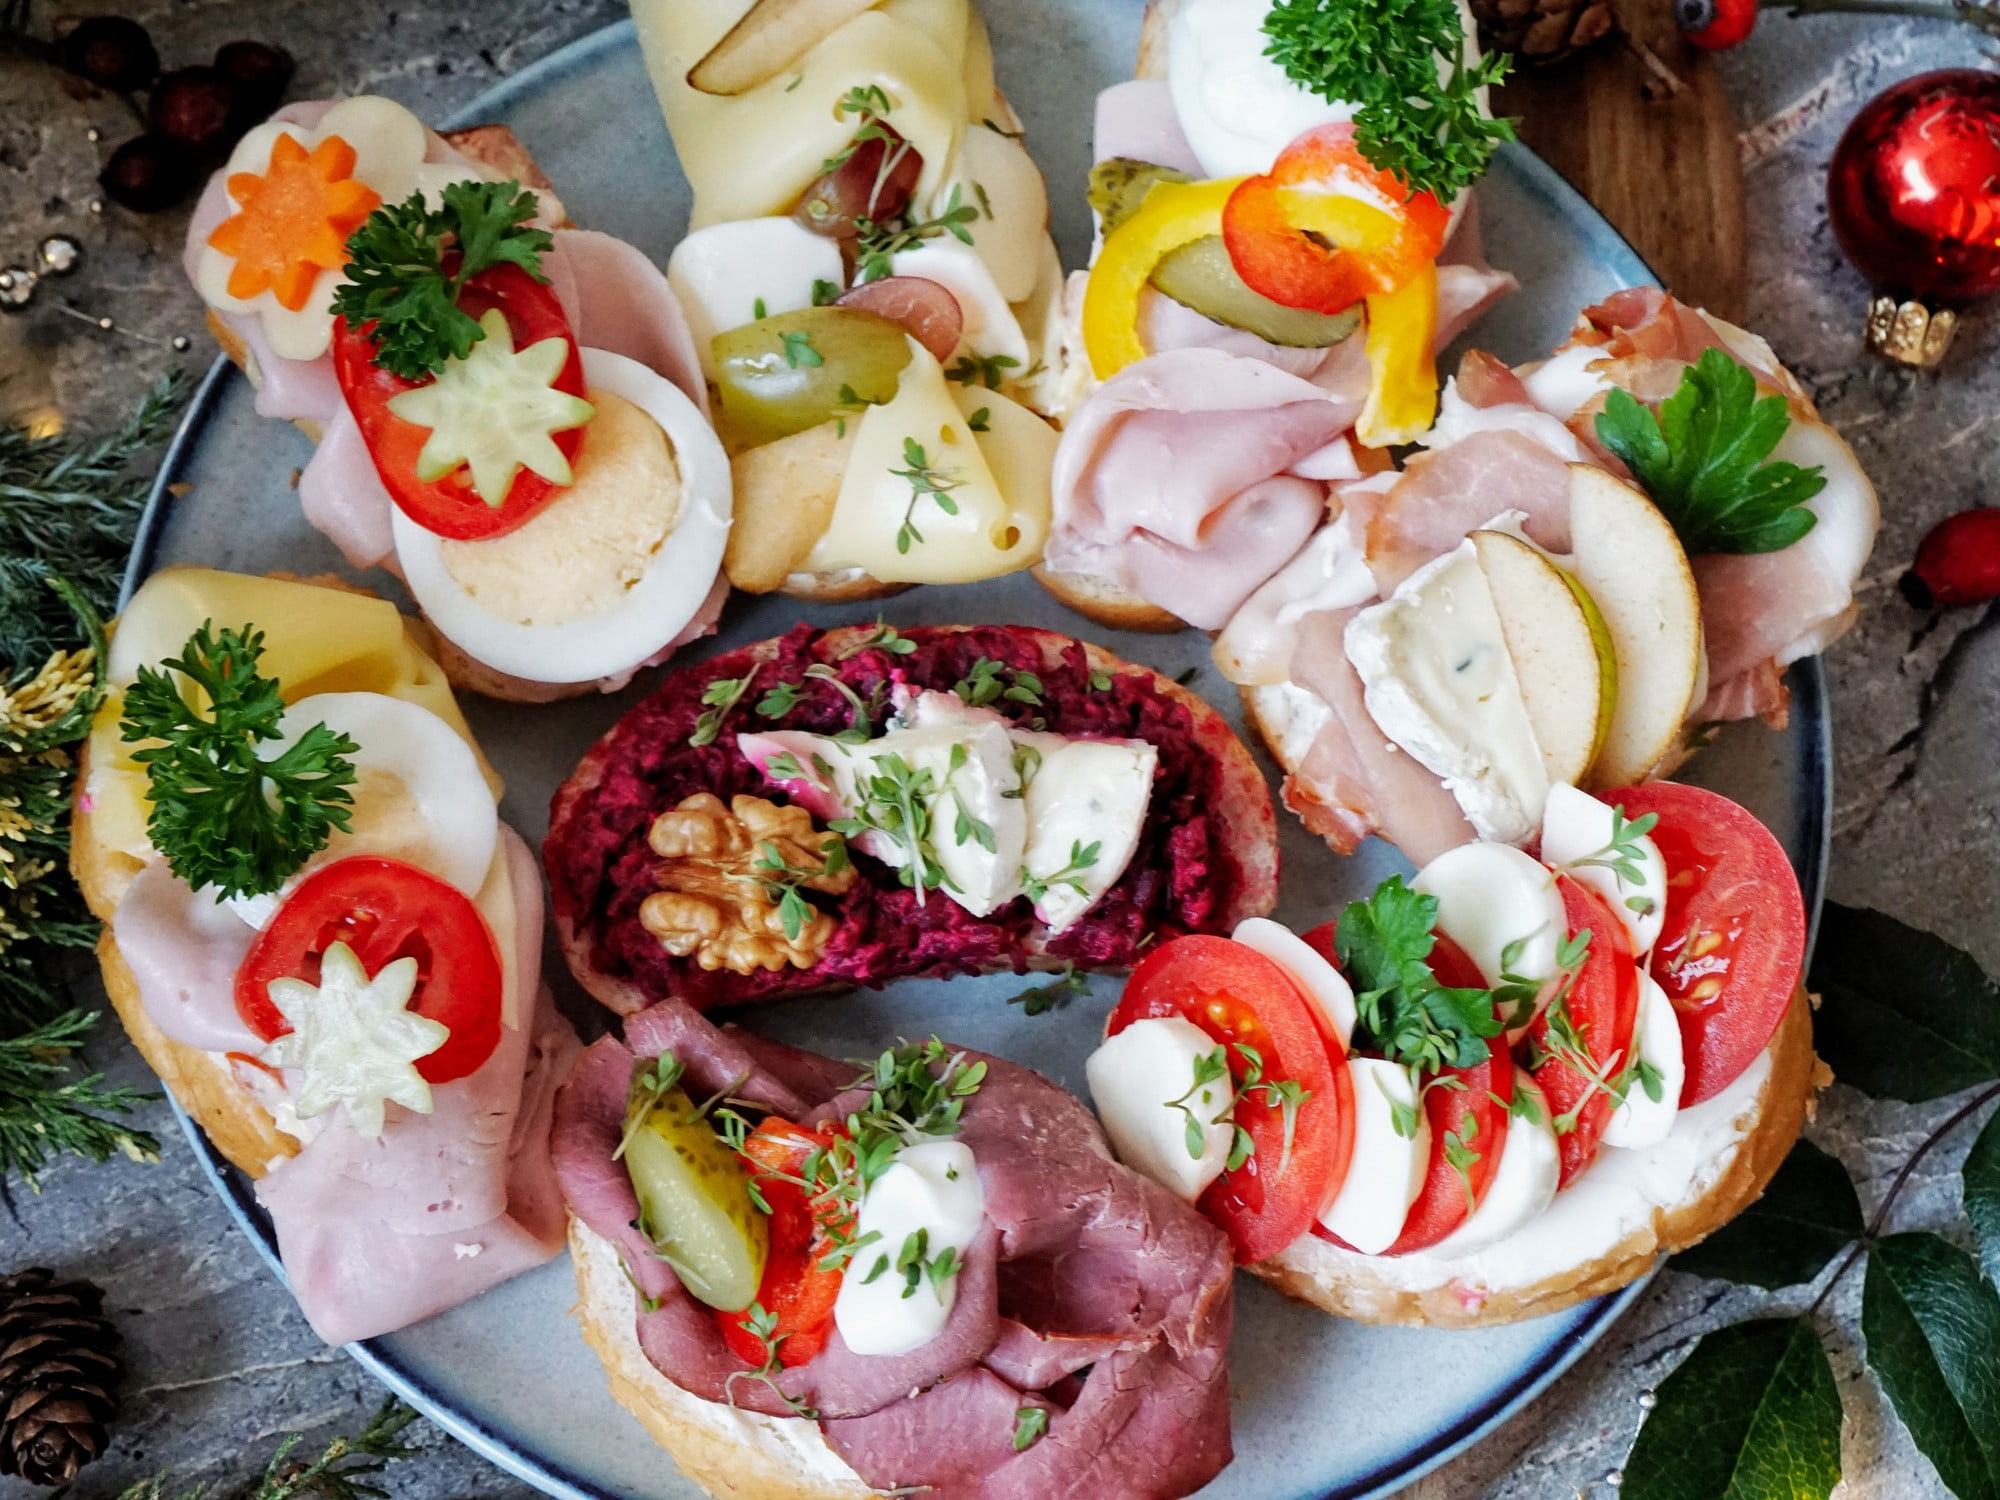 Chlebíčky vyzdobené rôznymi nátierkami, salámami a syrmi sú perfektné nielen na silvestrovskú oslavu.